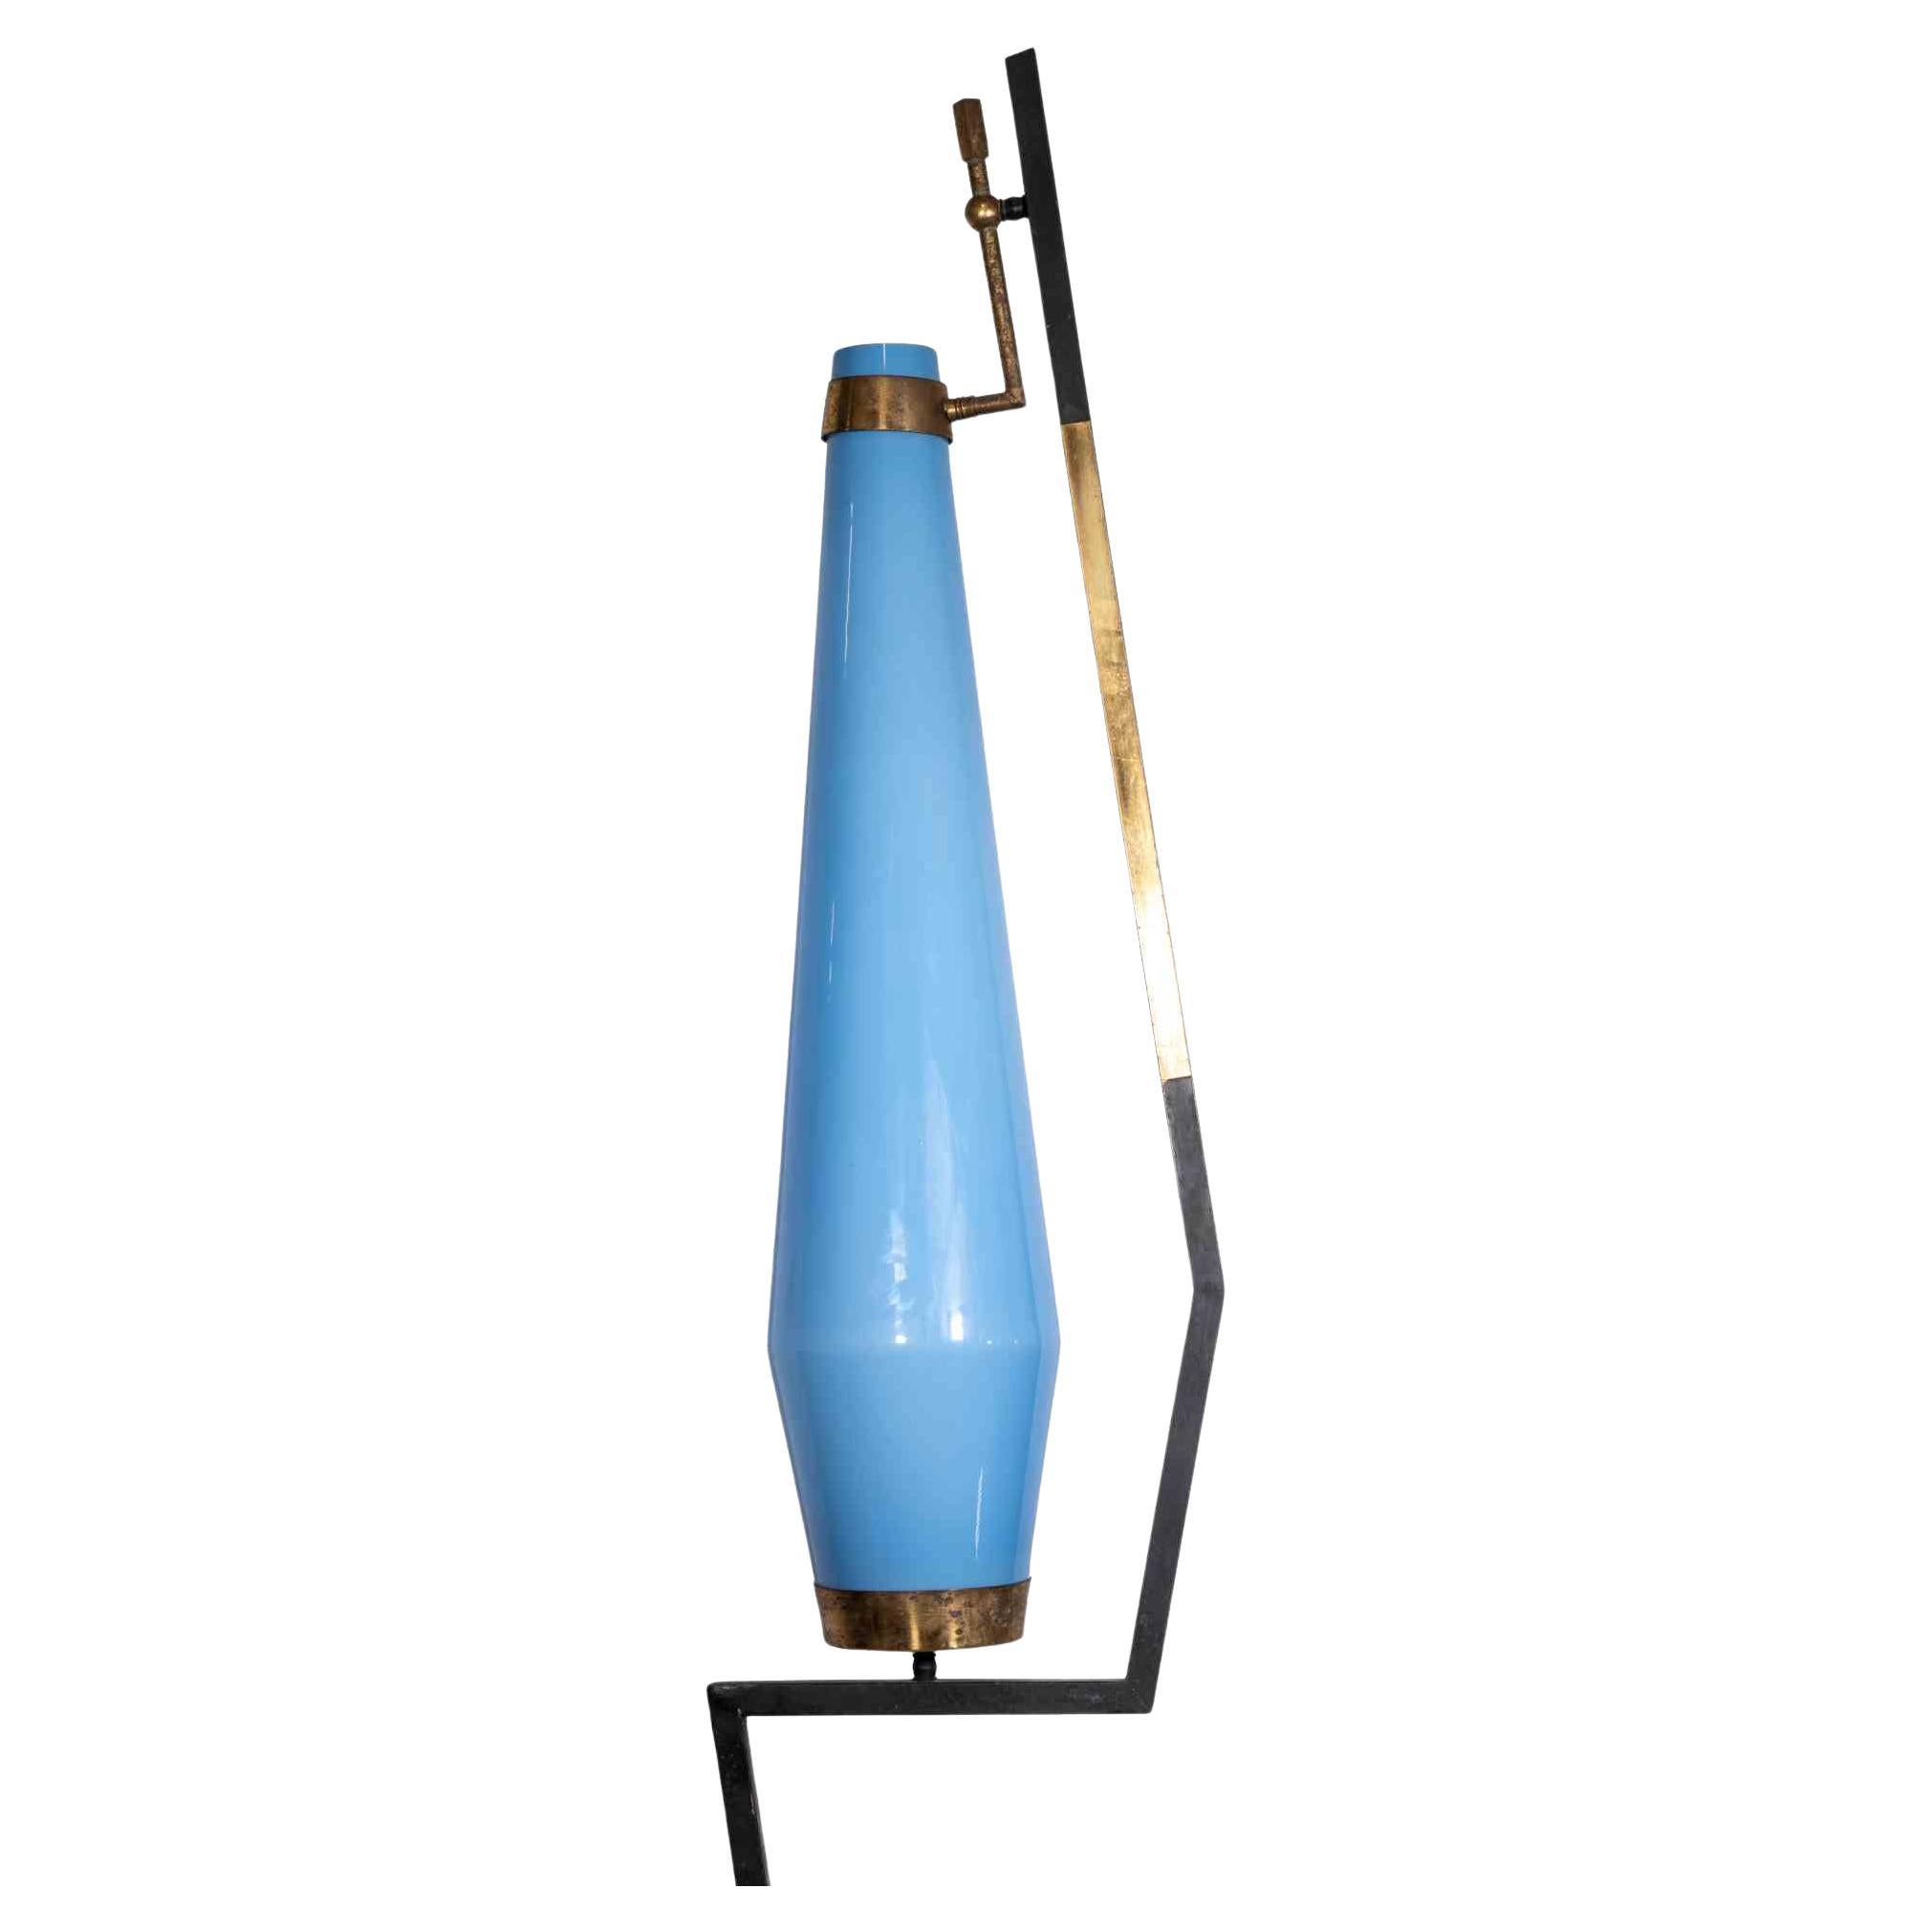 Le lampadaire est une lampe de conception originale réalisée dans les années 1970 par Gino Vistosi.

Abat-jour en verre de Murano bleu clair, base en métal, laiton et marbre de forme ronde.

Etat neuf (quelques manques de matière sur le